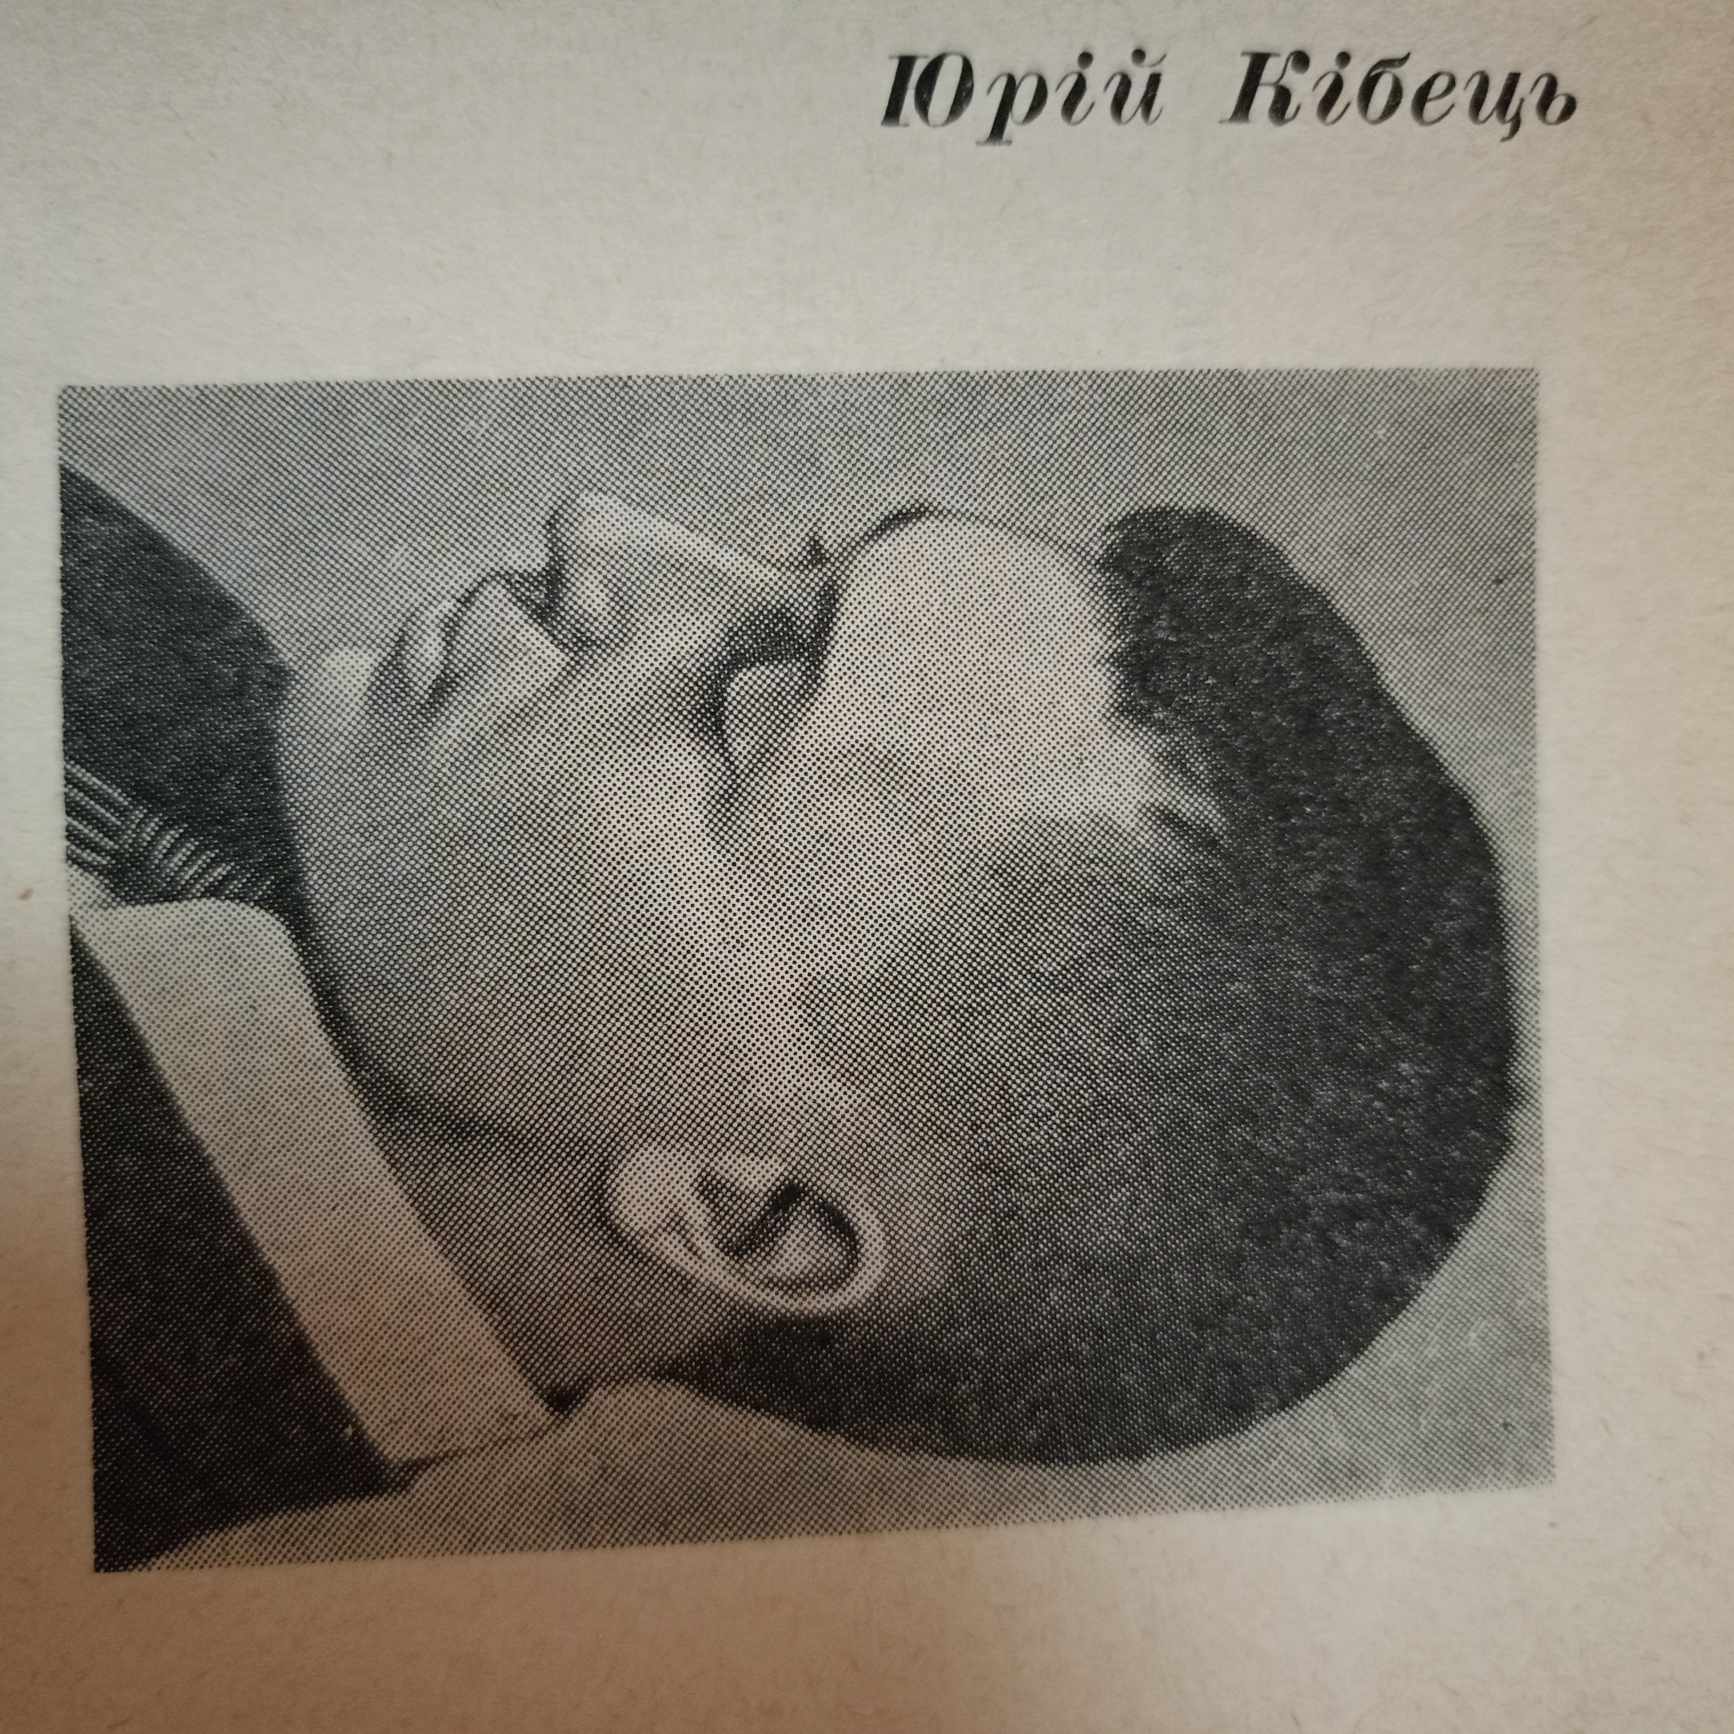 Ю. Кібець вперше публікується в альманасі «Вітрила», 1967 р.